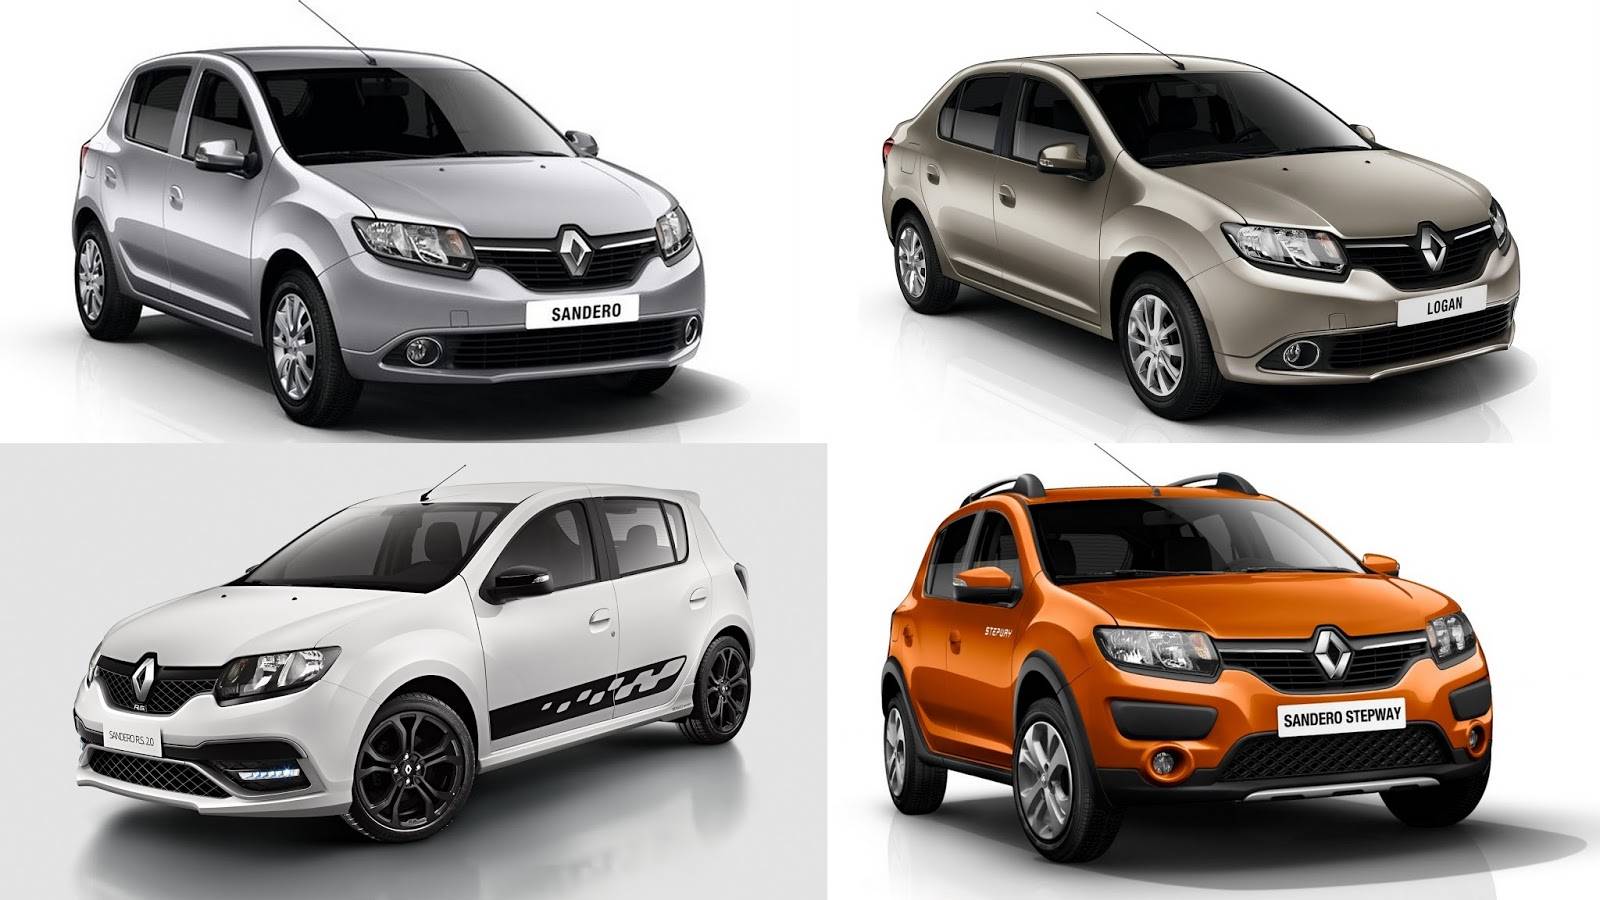 Выбираем компактный хэтчбек: Renault Sandero или Chevrolet Lacetti